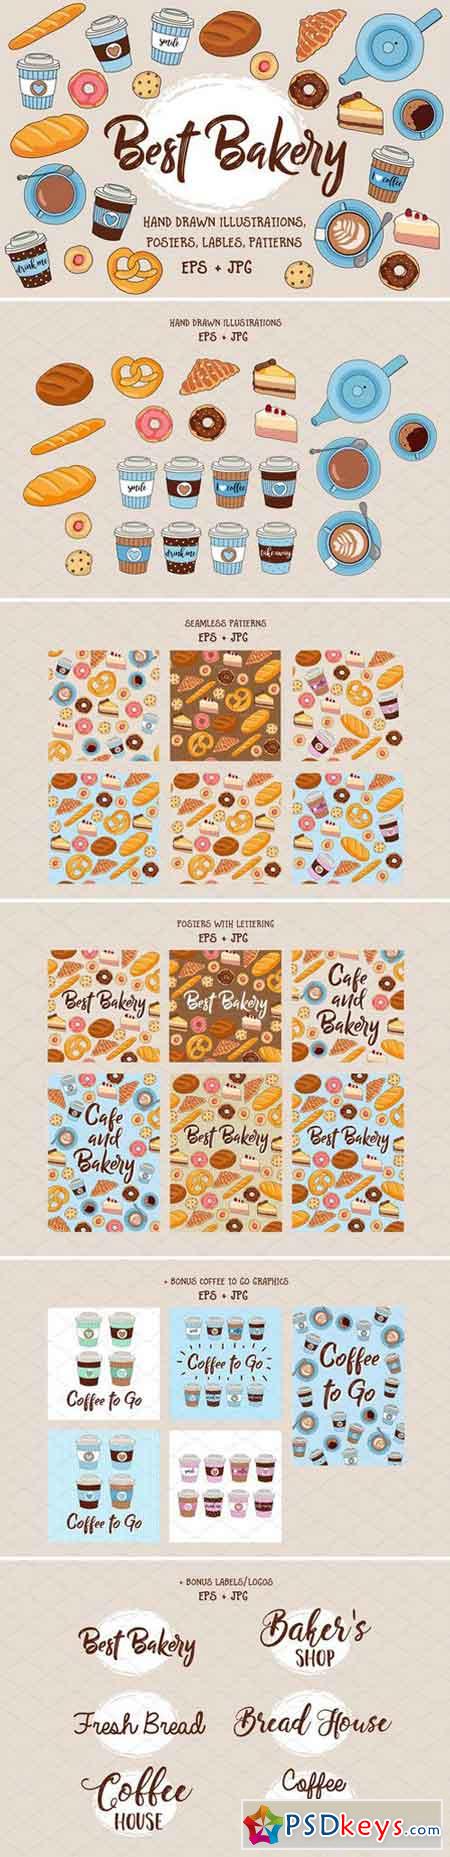 Best Bakery illustration pack +bonus 2255646